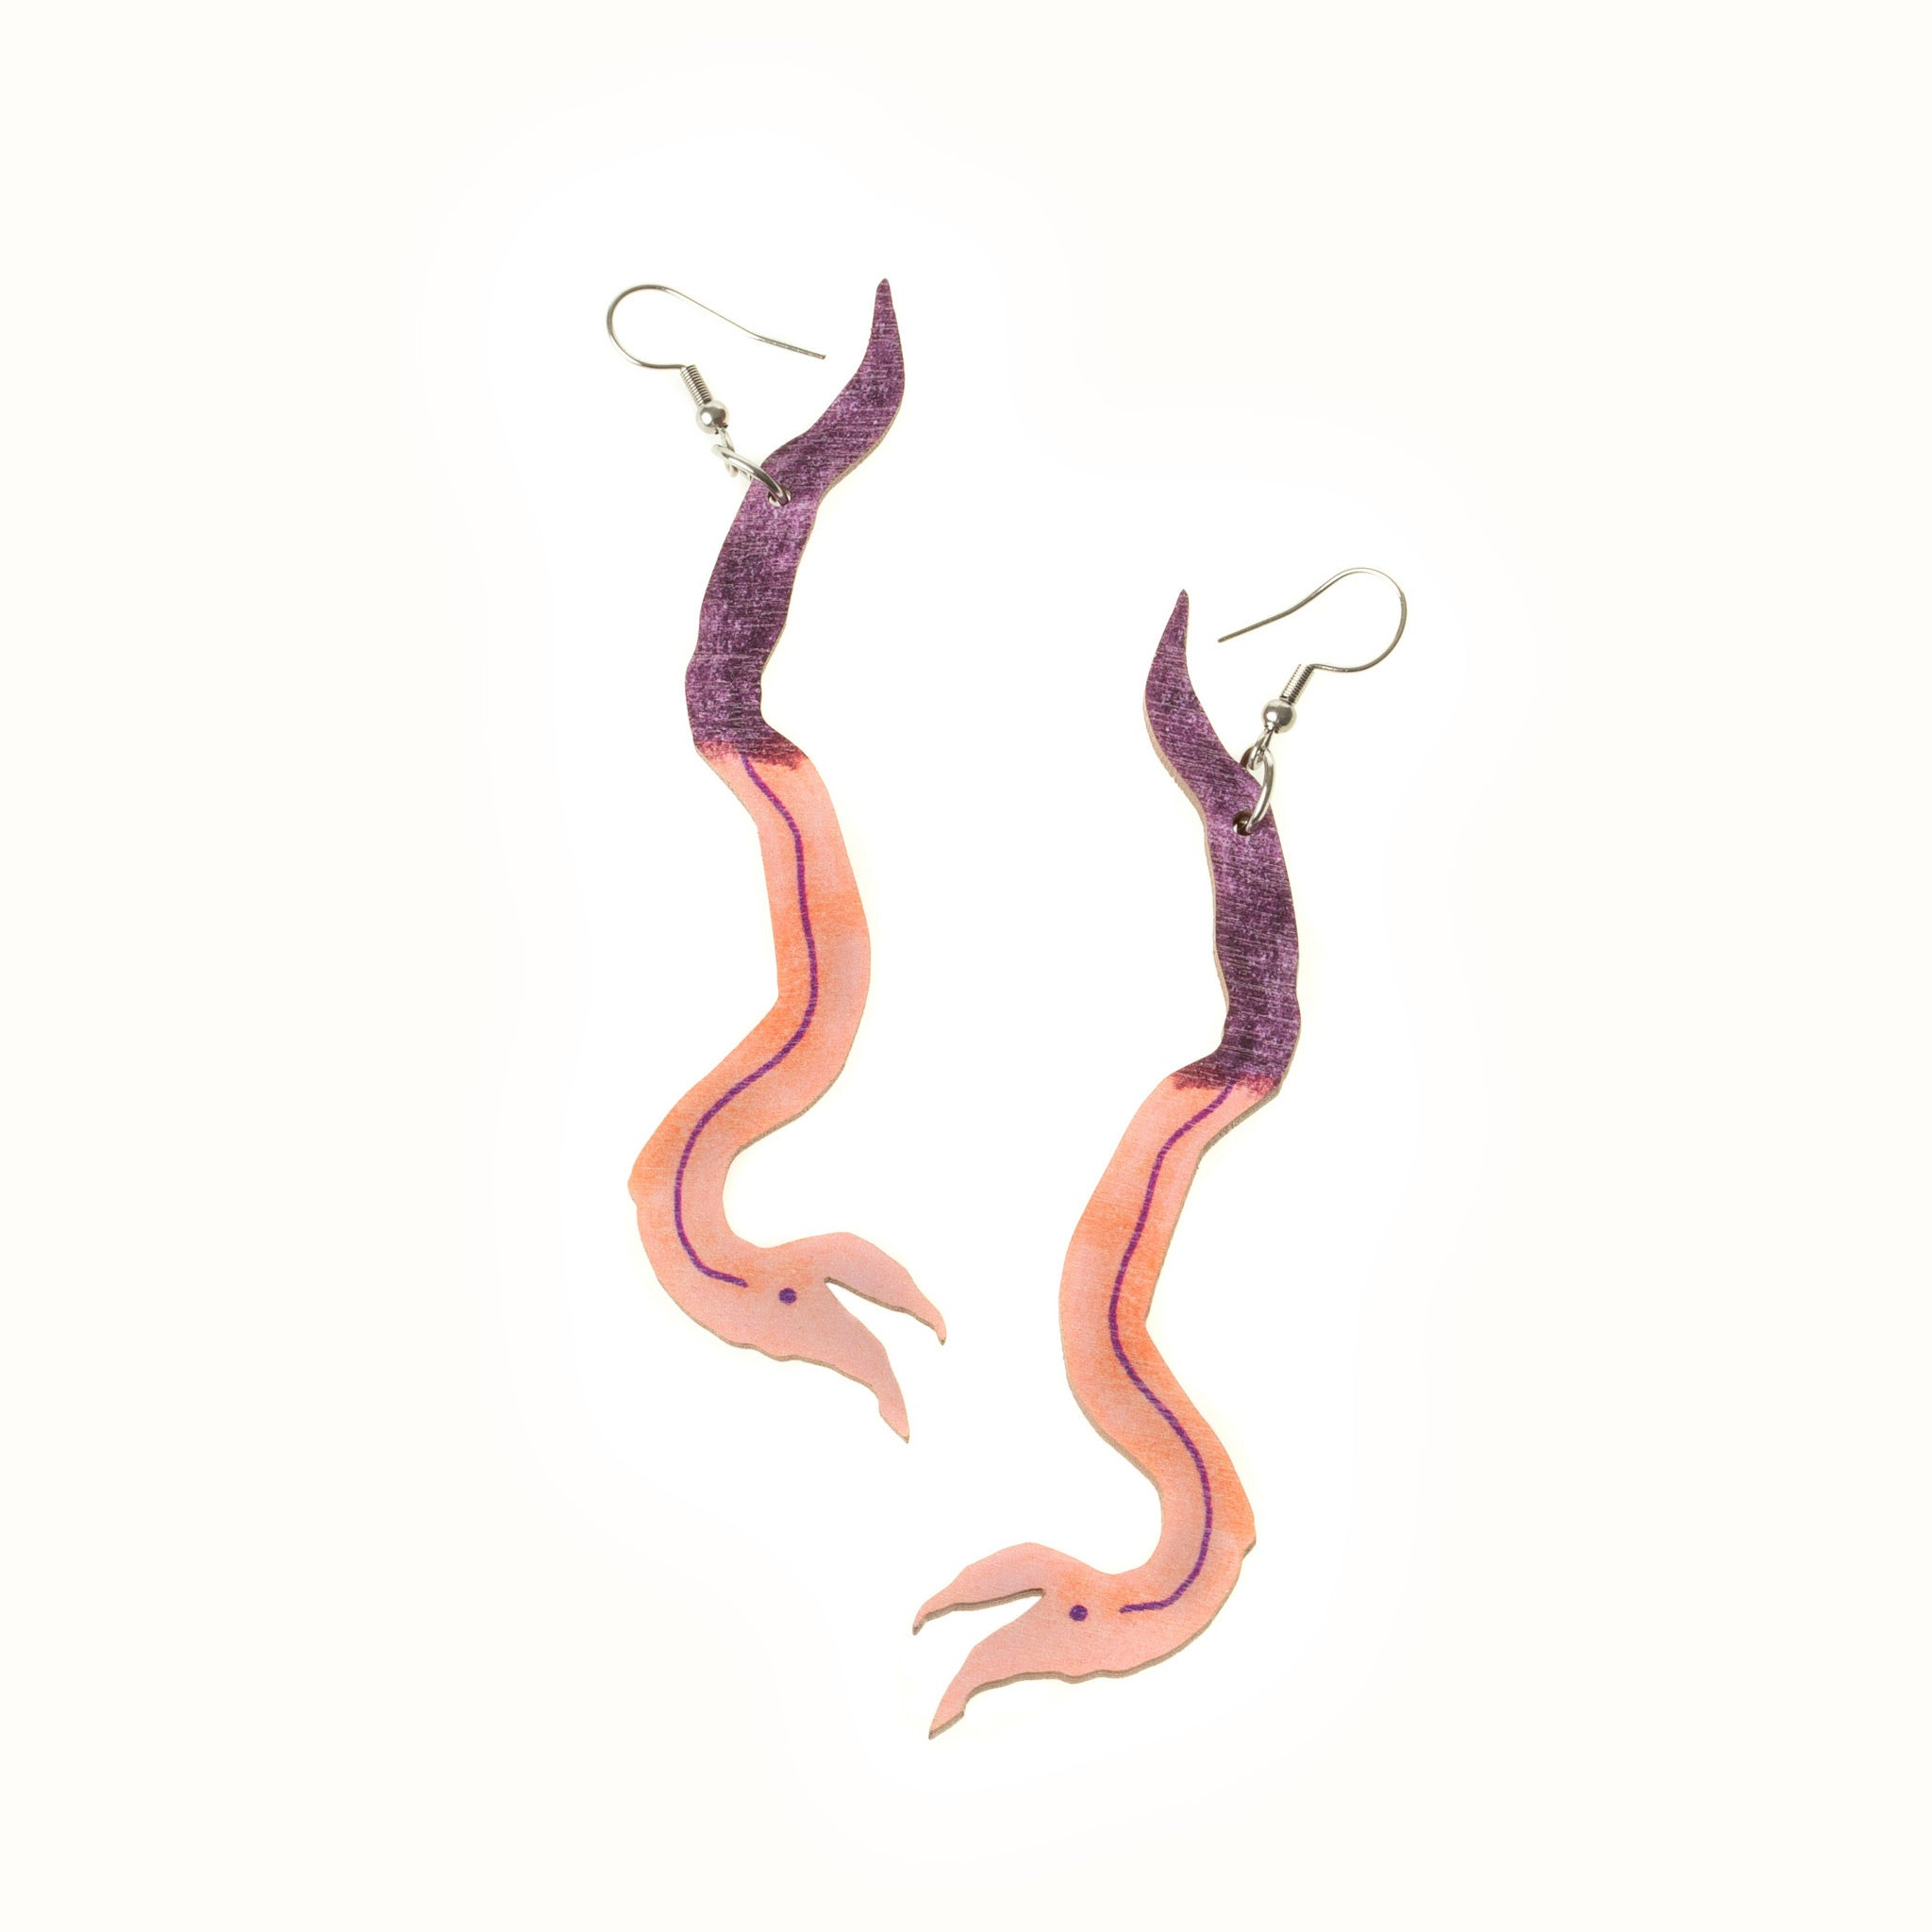 My Worms, My Friends #2 earrings